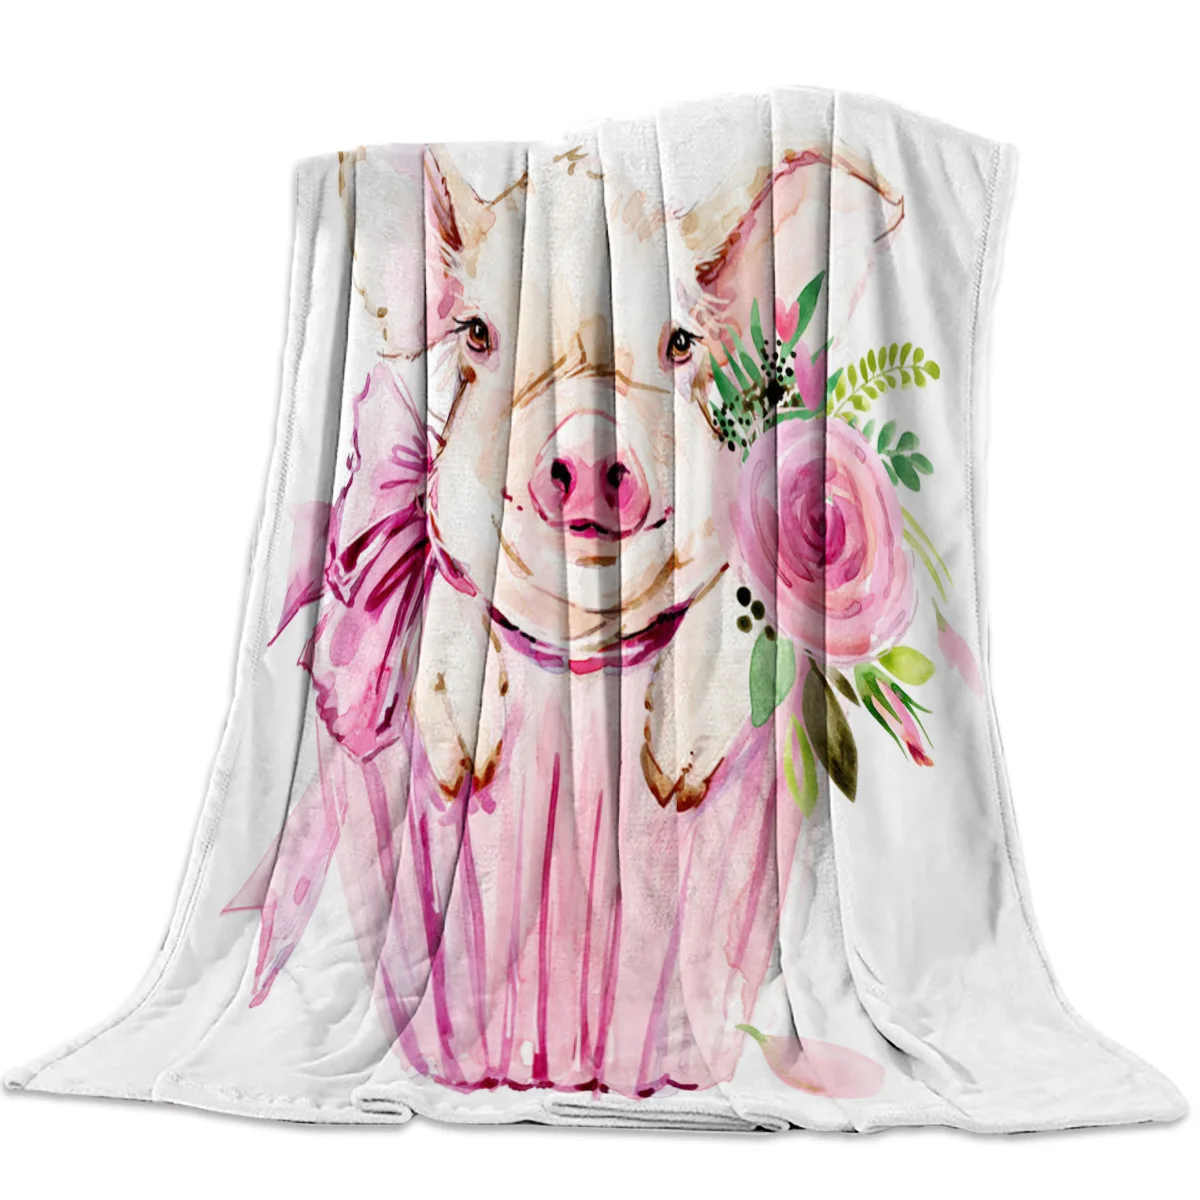 

Фланелевое Одеяло для кровати и дивана, портативное мягкое флисовое покрывало розового цвета с изображением свиньи, цветка, розы, смешное плюшевое покрывало, королева, король, двойной размер